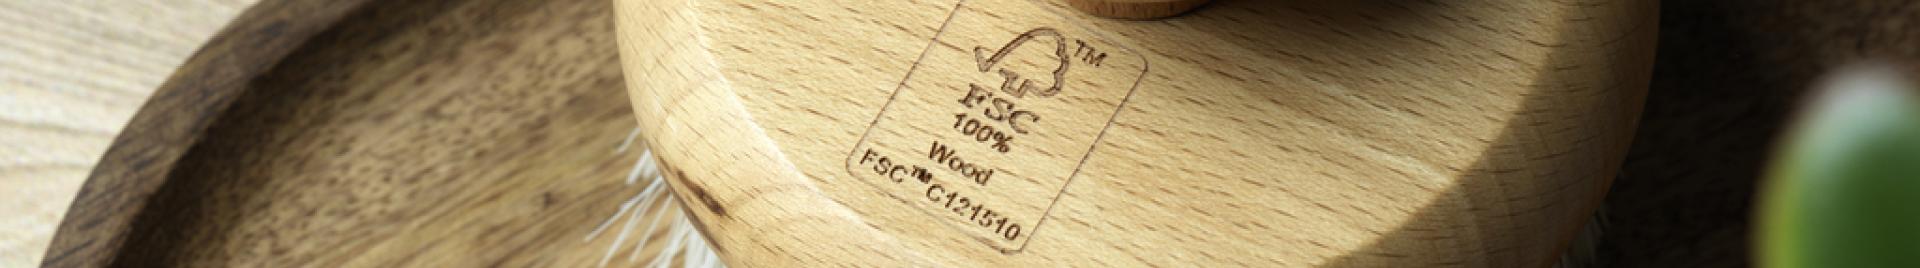 Szczotka drewniana z etykietą FSC